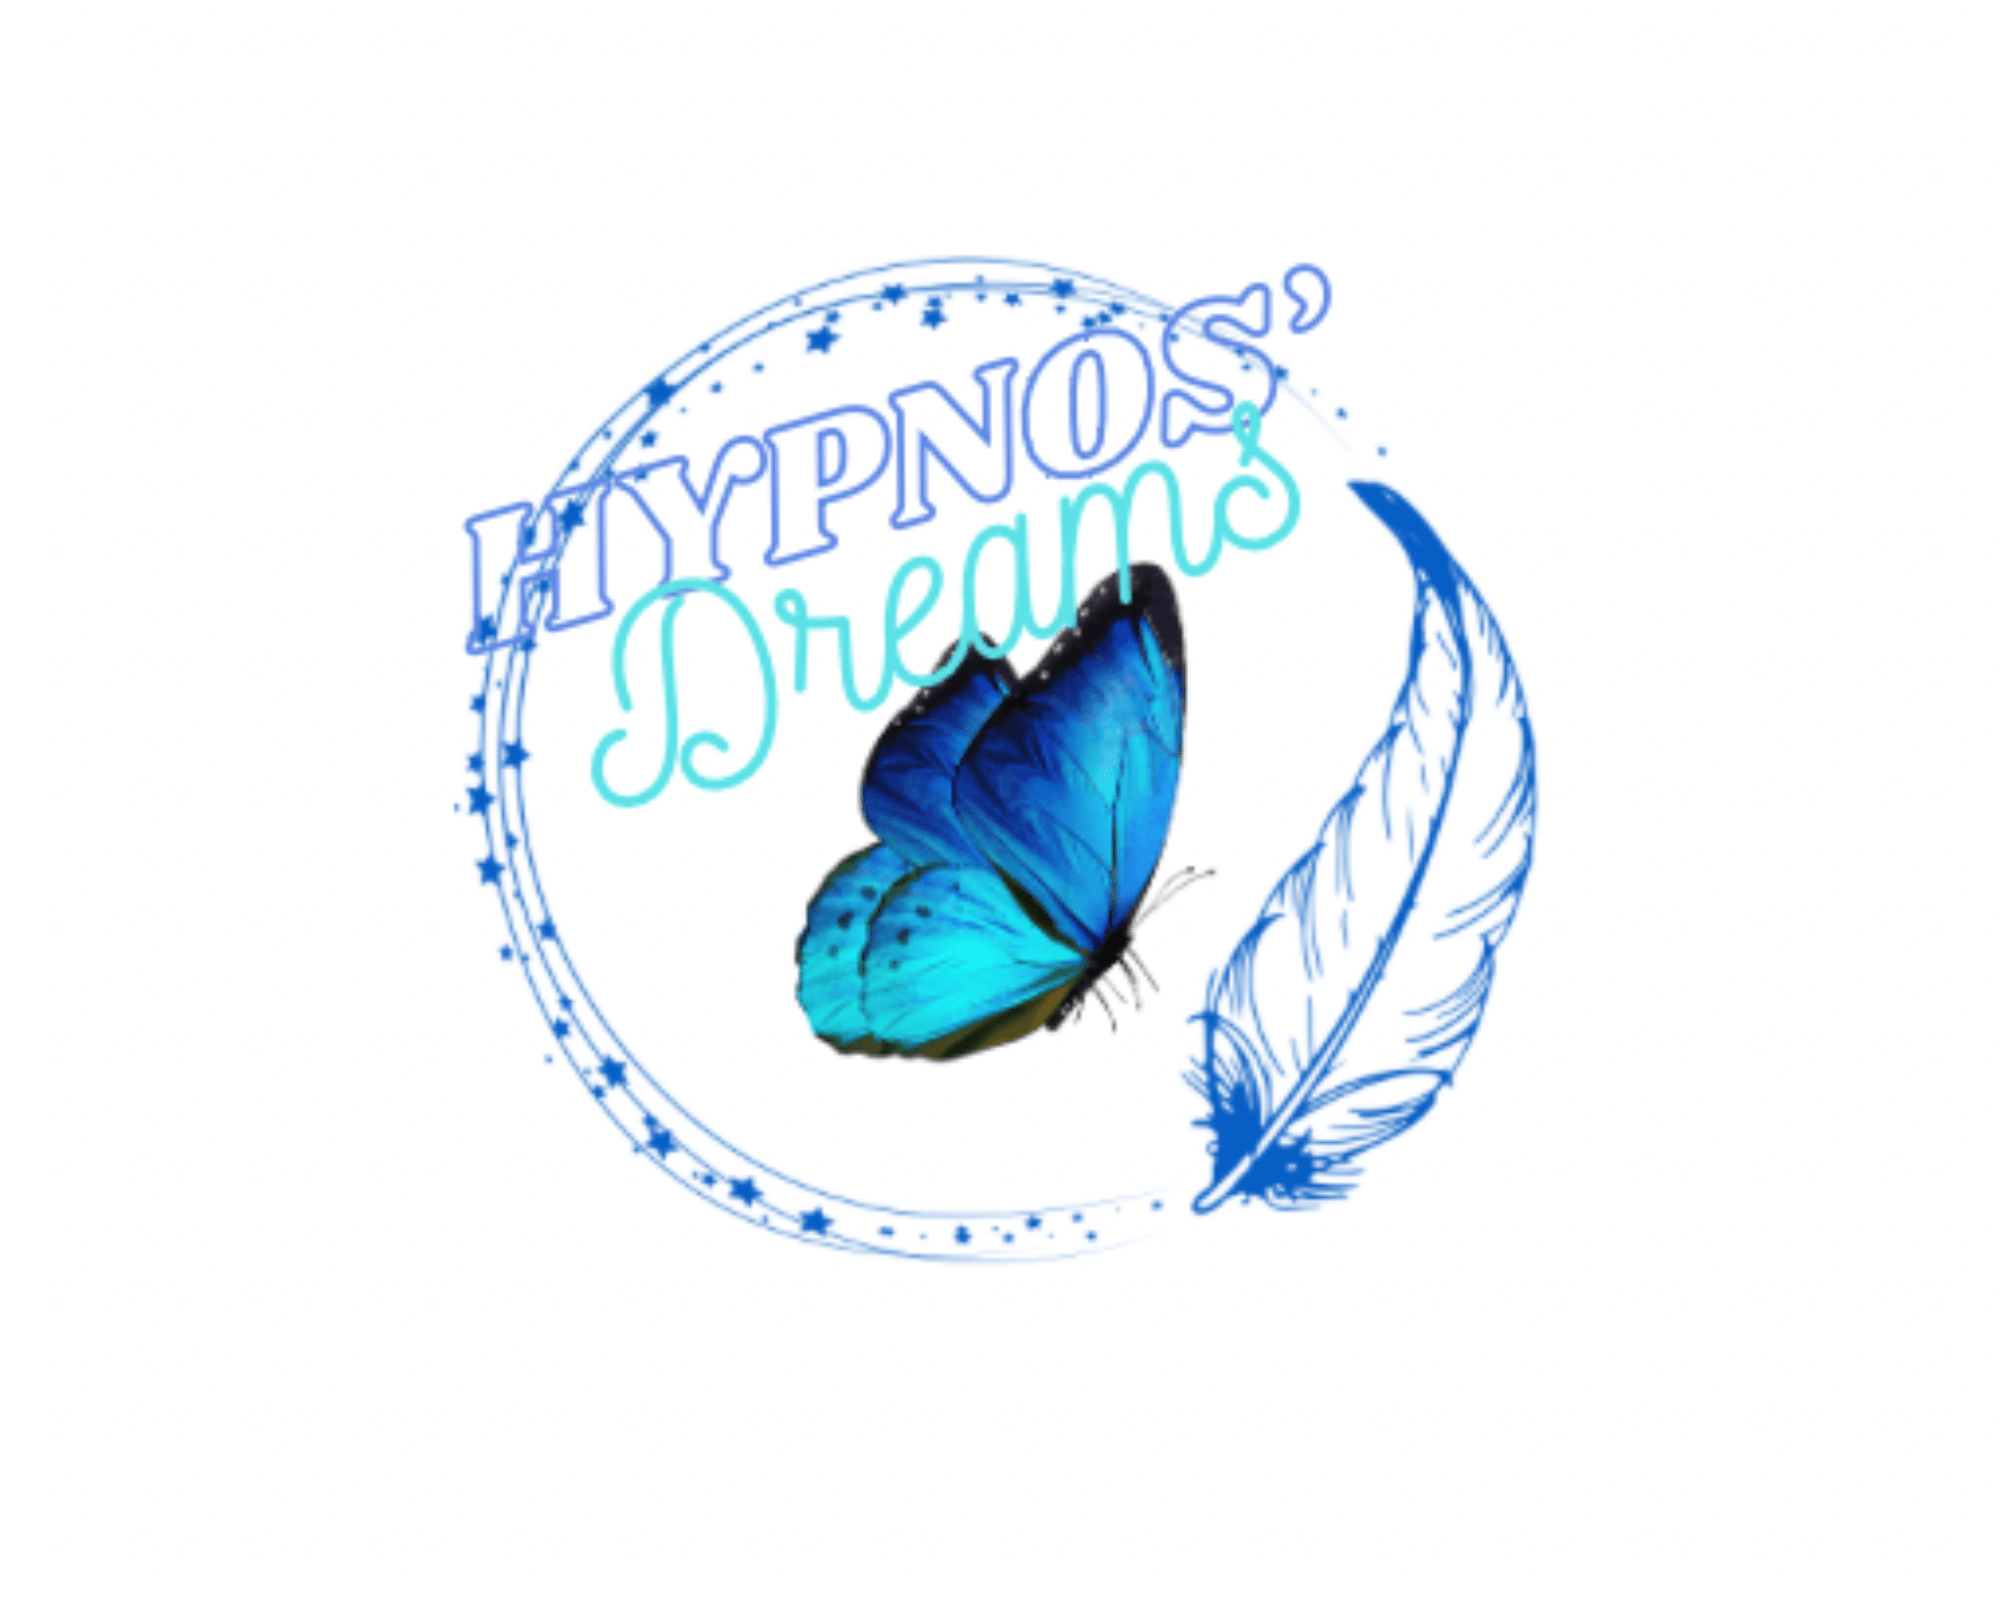 Hypnos'dreams